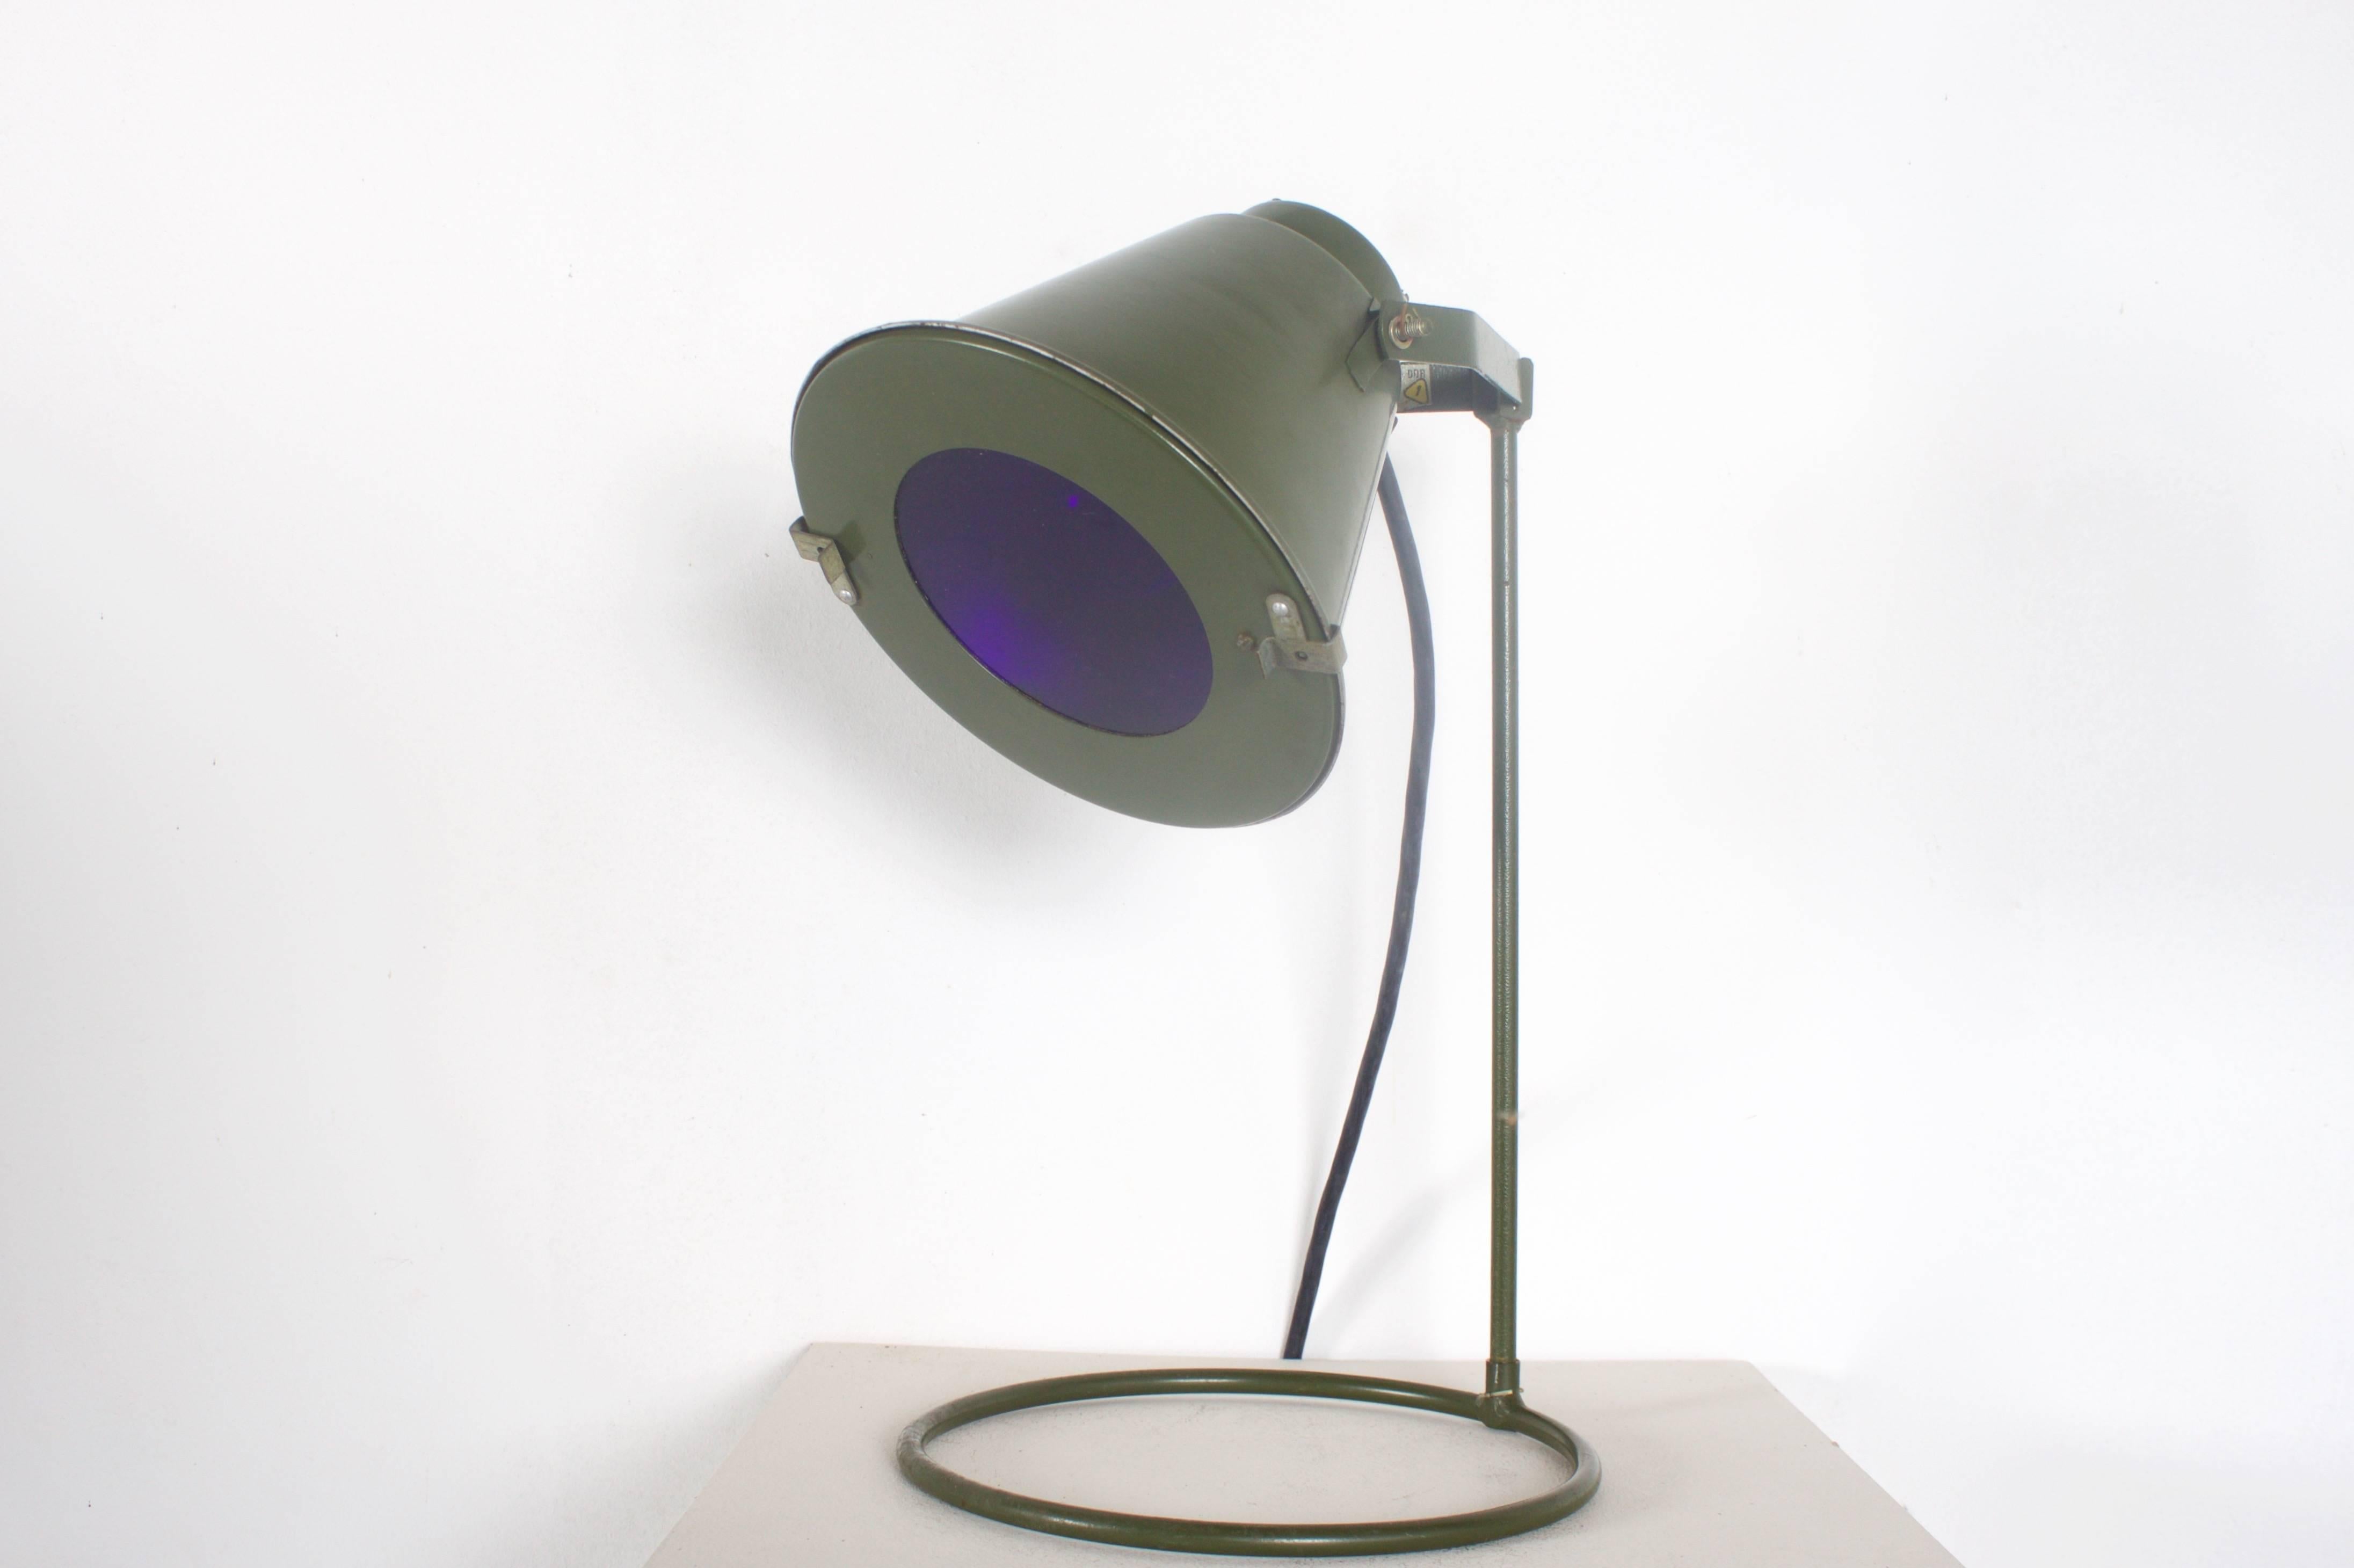 Rare lampe d'atterrissage de la DDR utilisée par la 'Nationale Volksarmee' (NVA) dans les années 1970.

Quatre articles disponibles.

La lampe peut être utilisée comme lampe de bureau ou de table.

Il est livré avec la lentille bleue d'origine